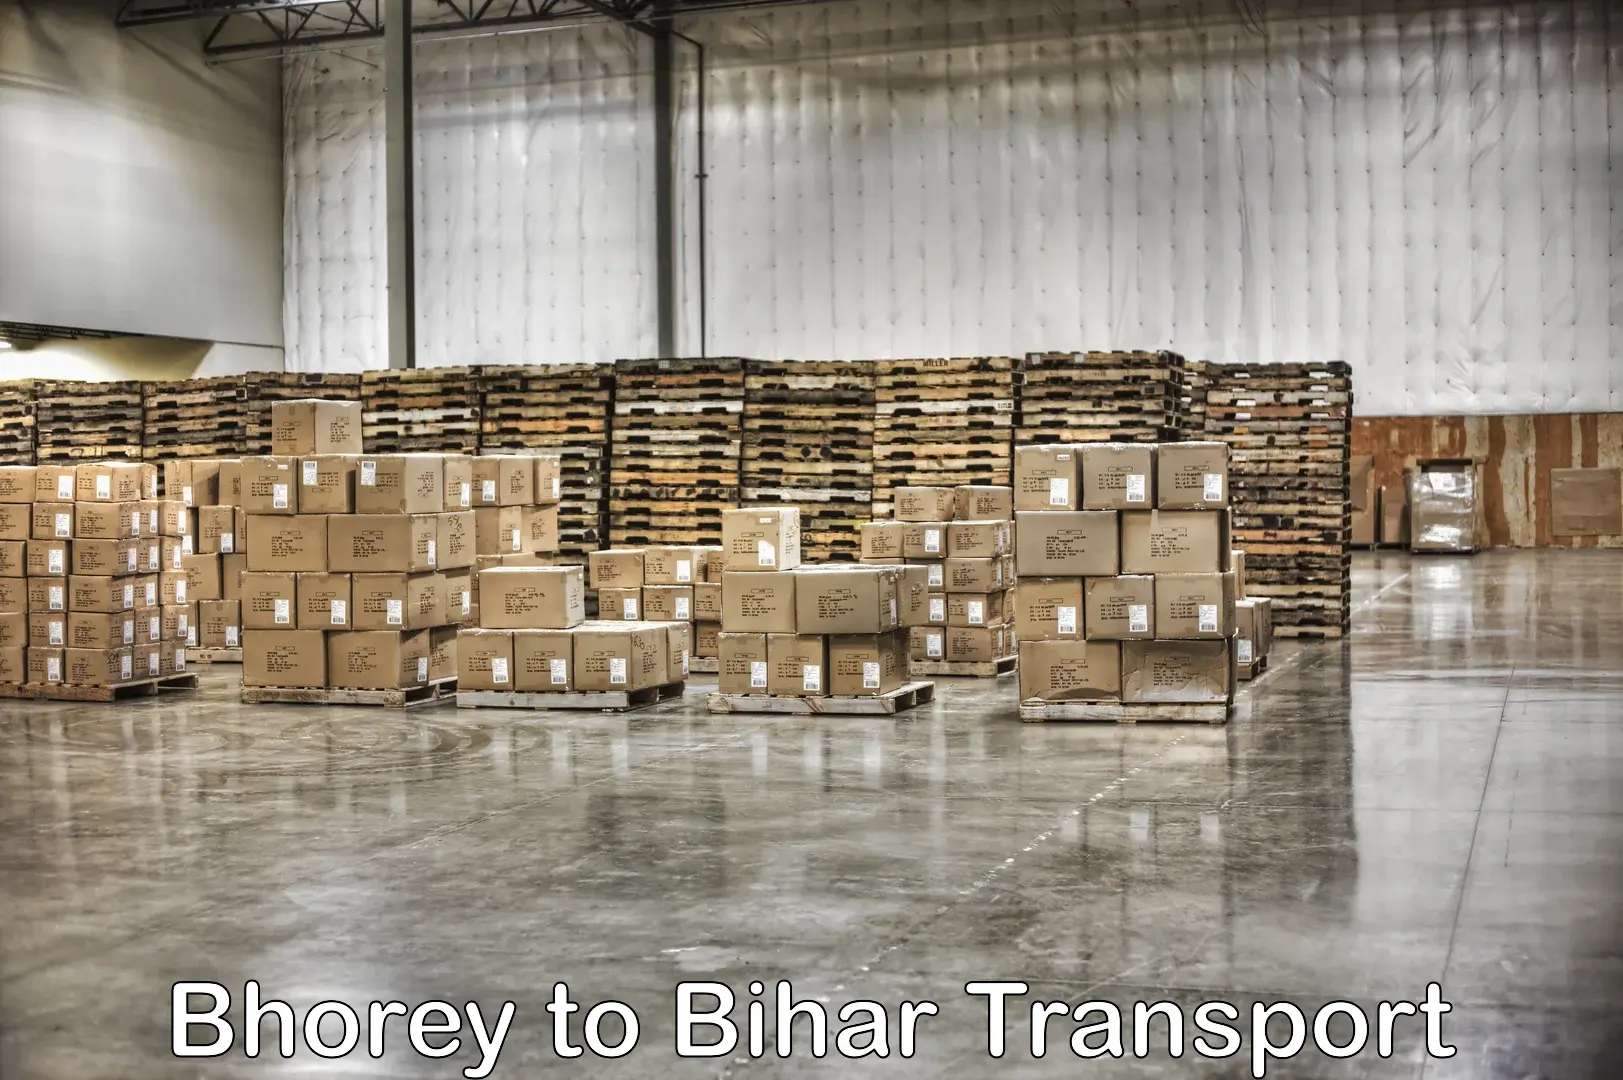 Nearby transport service Bhorey to Khizarsarai